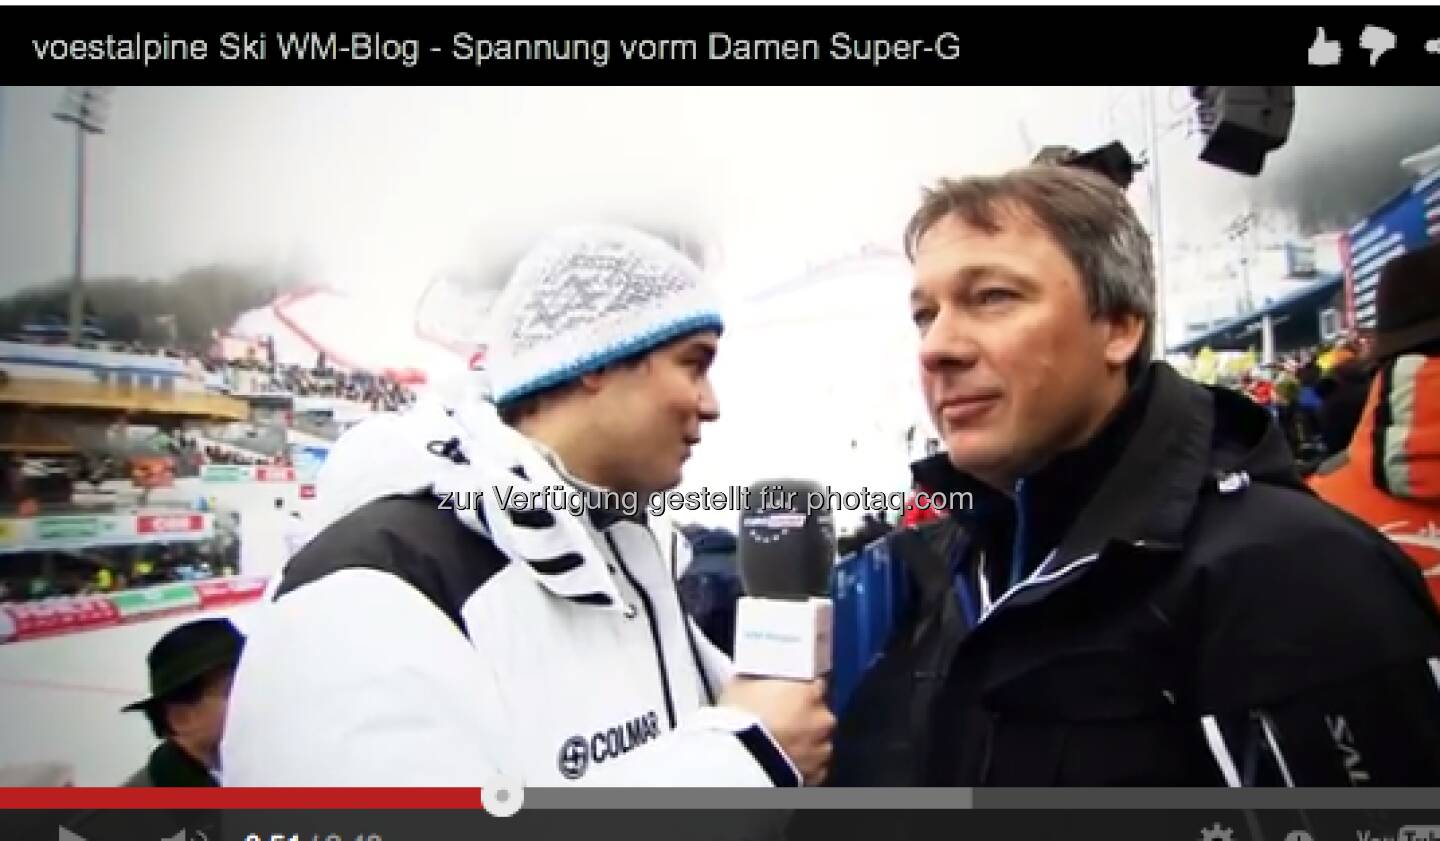 Fritz Strobl im Video vor dem Damen Super G http://voestalpine-wm-blog.at/2013/02/05/voestalpine-ski-wm-blog-spannung-vorm-damen-super-g/#.UREkio7aK_Q